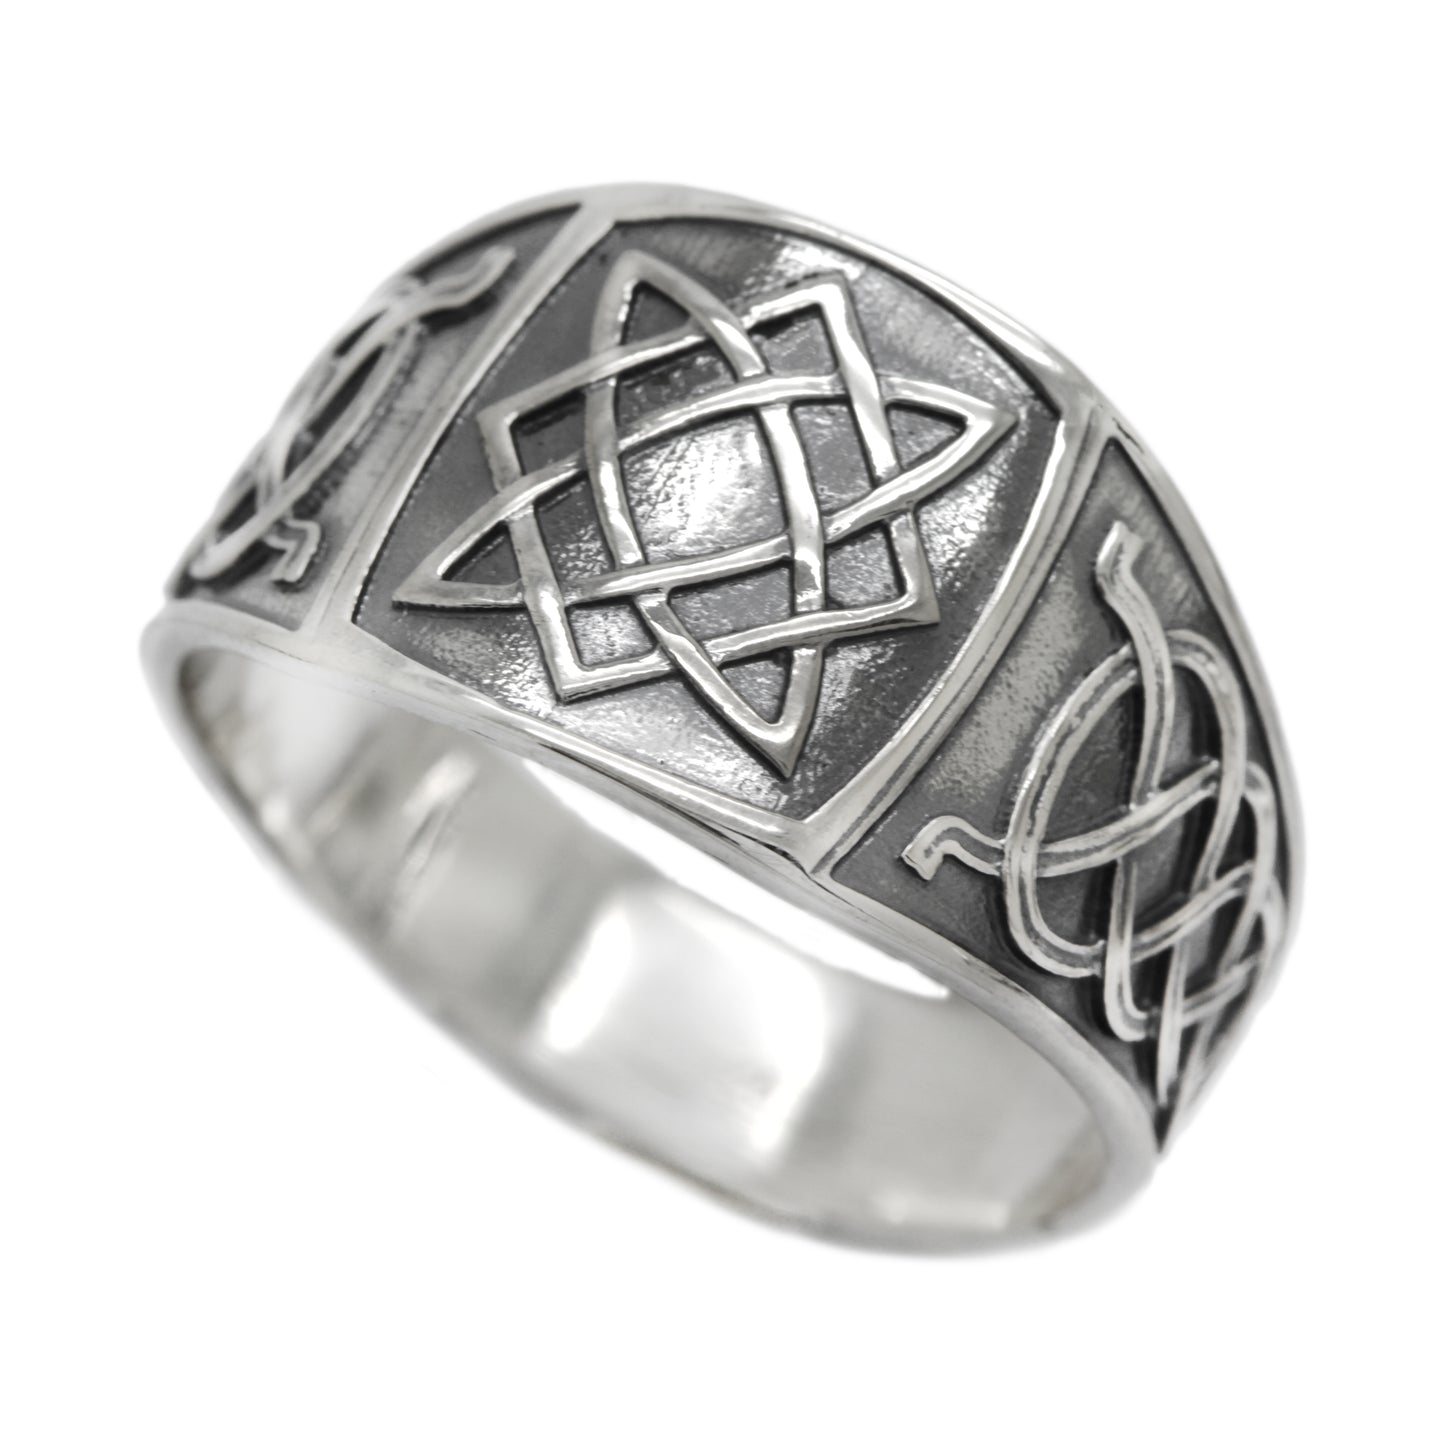 Svarog Quadratisches slawisches Symbol Ethnisches Ornament Herrenring Sterling Silber 925